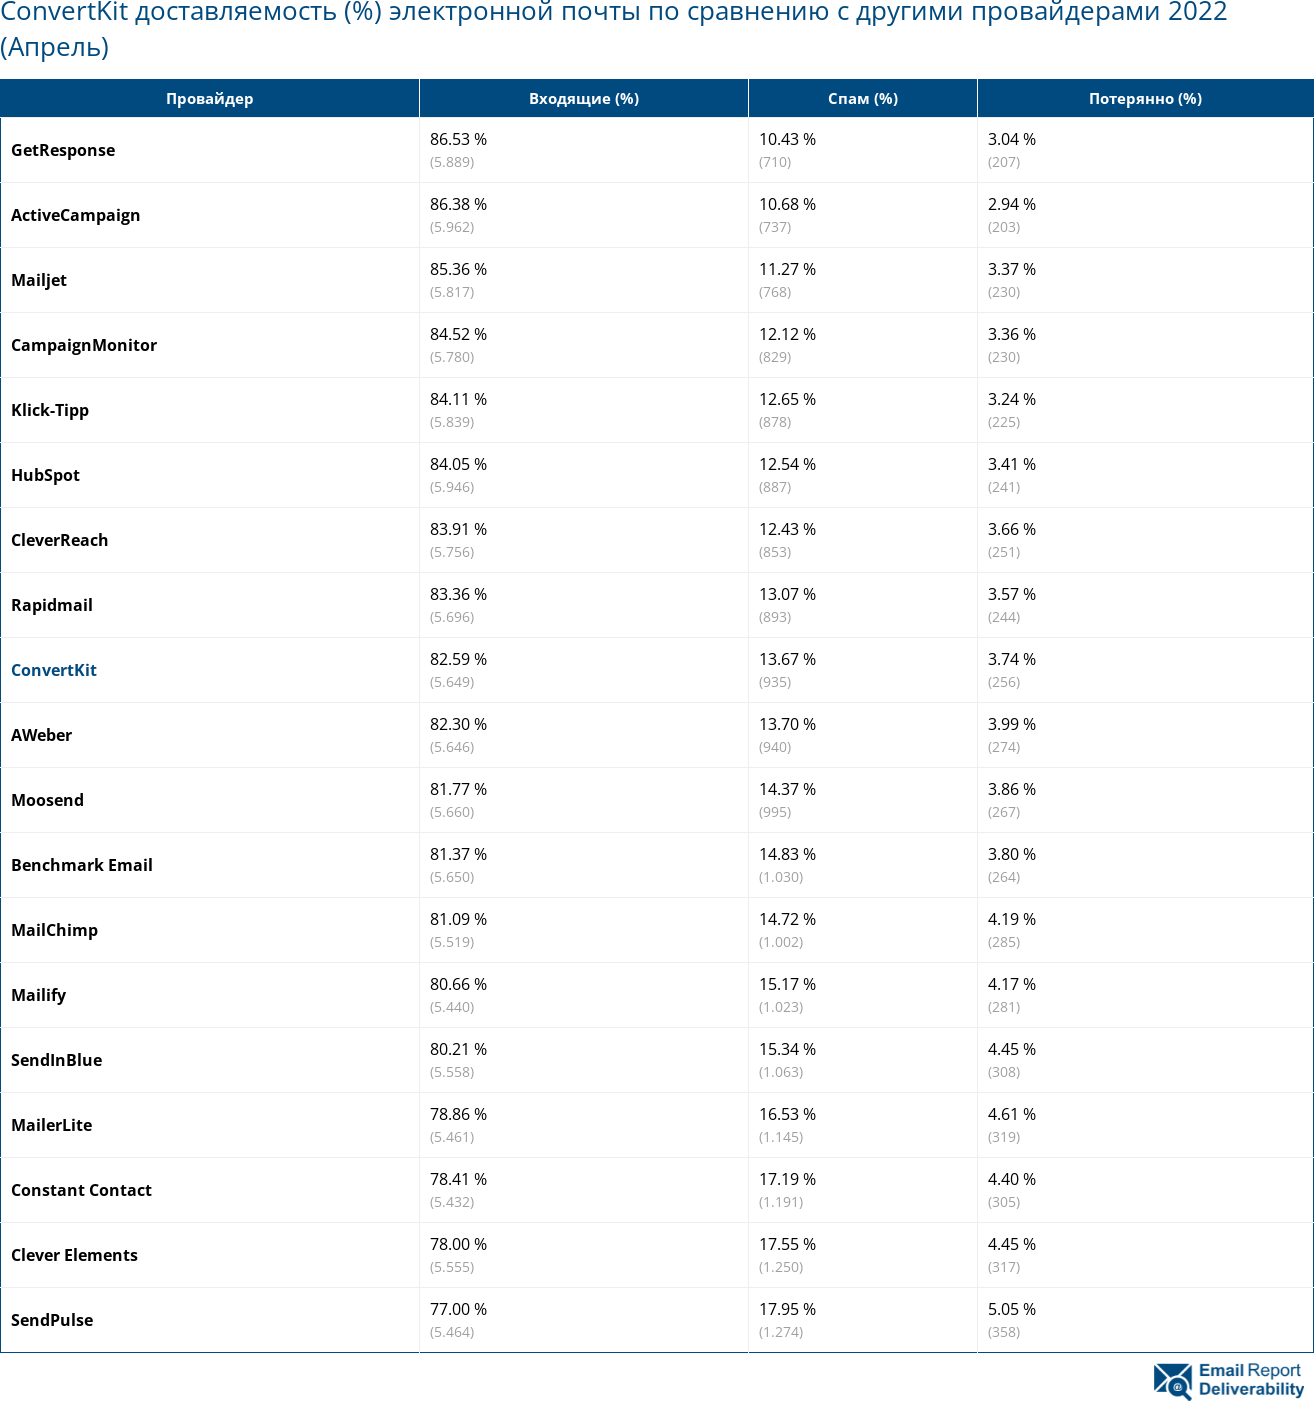 ConvertKit доставляемость (%) электронной почты по сравнению с другими провайдерами 2022 (Апрель)